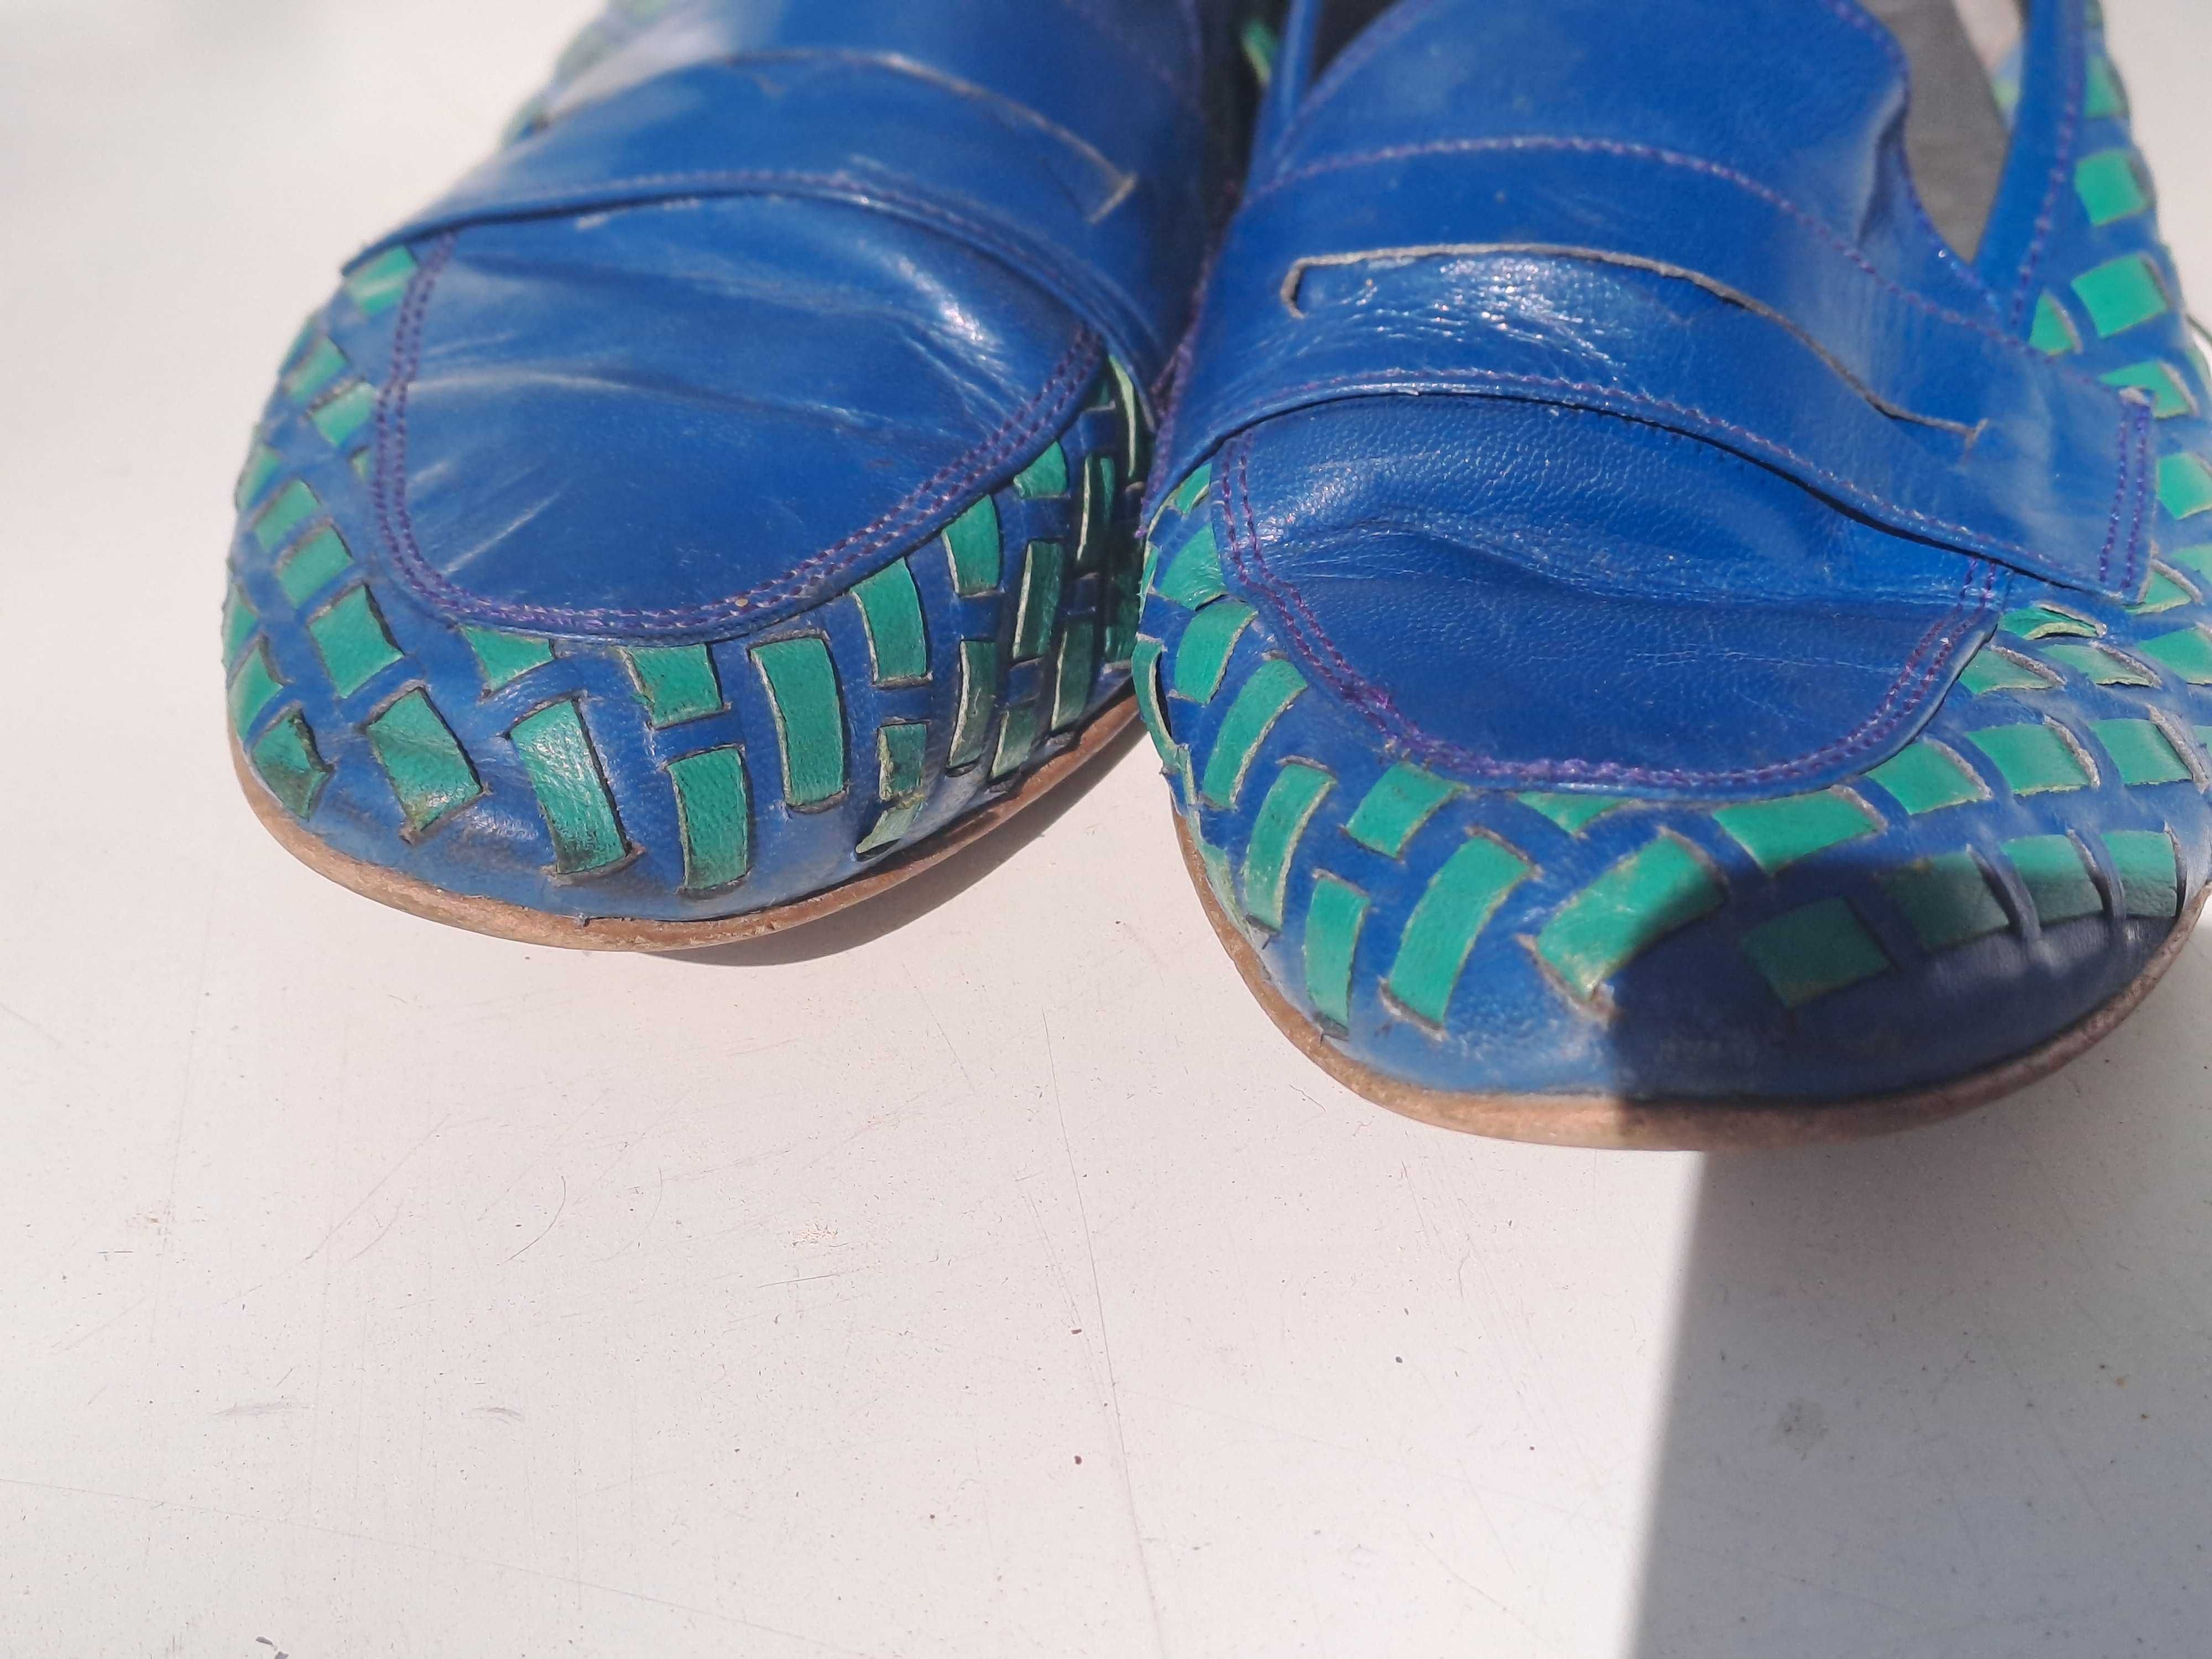 buty damskie wsuwane (mokasyny) niebieskie-zielone SERVAS